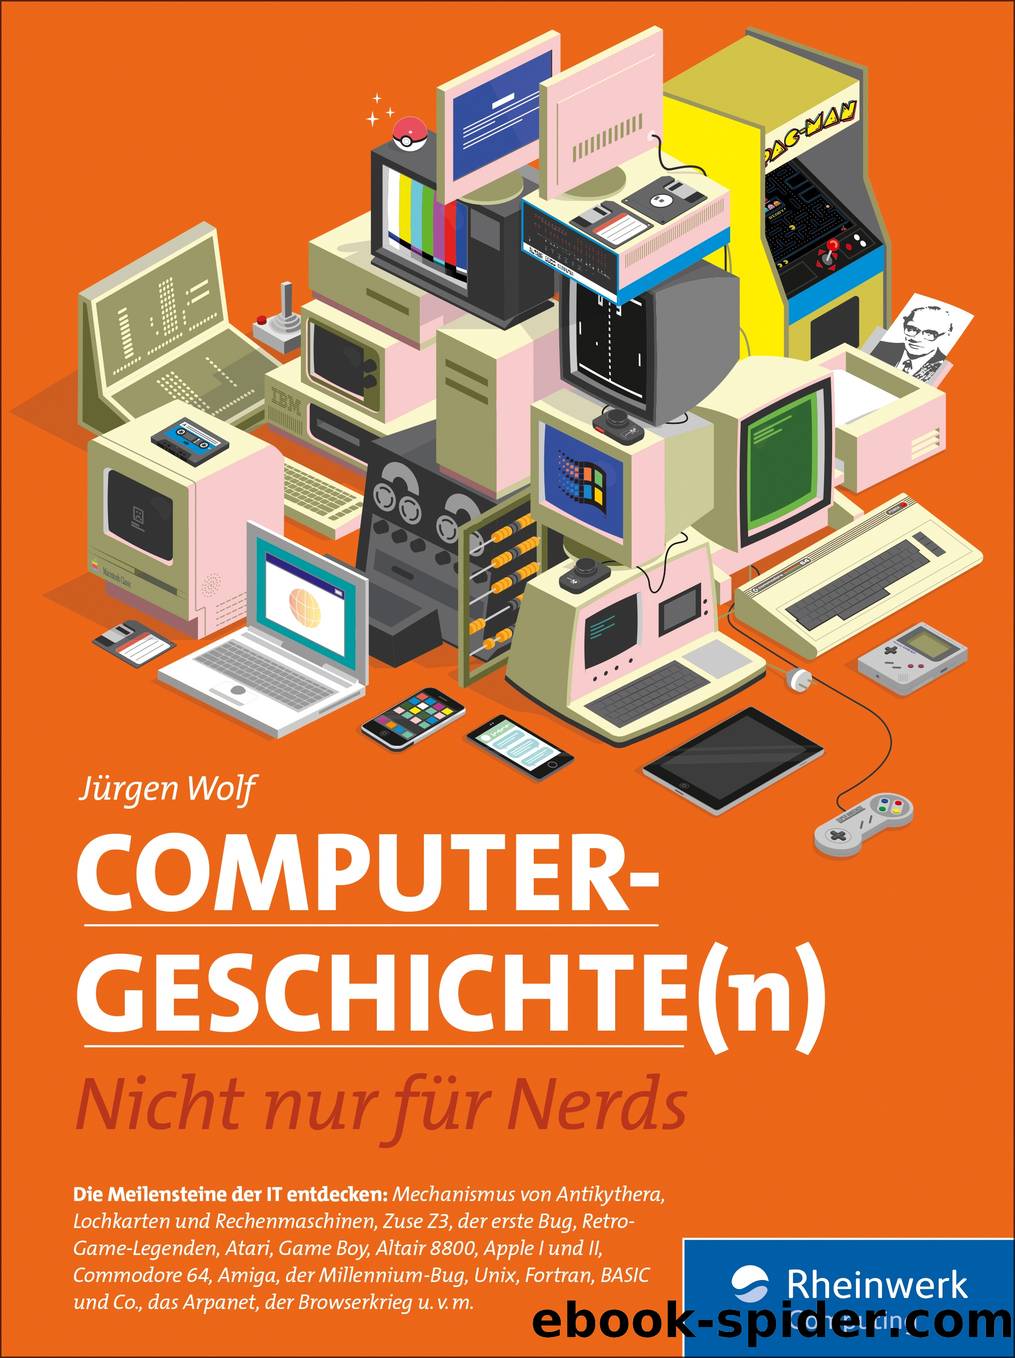 Computergeschichte(n) by Jürgen Wolf